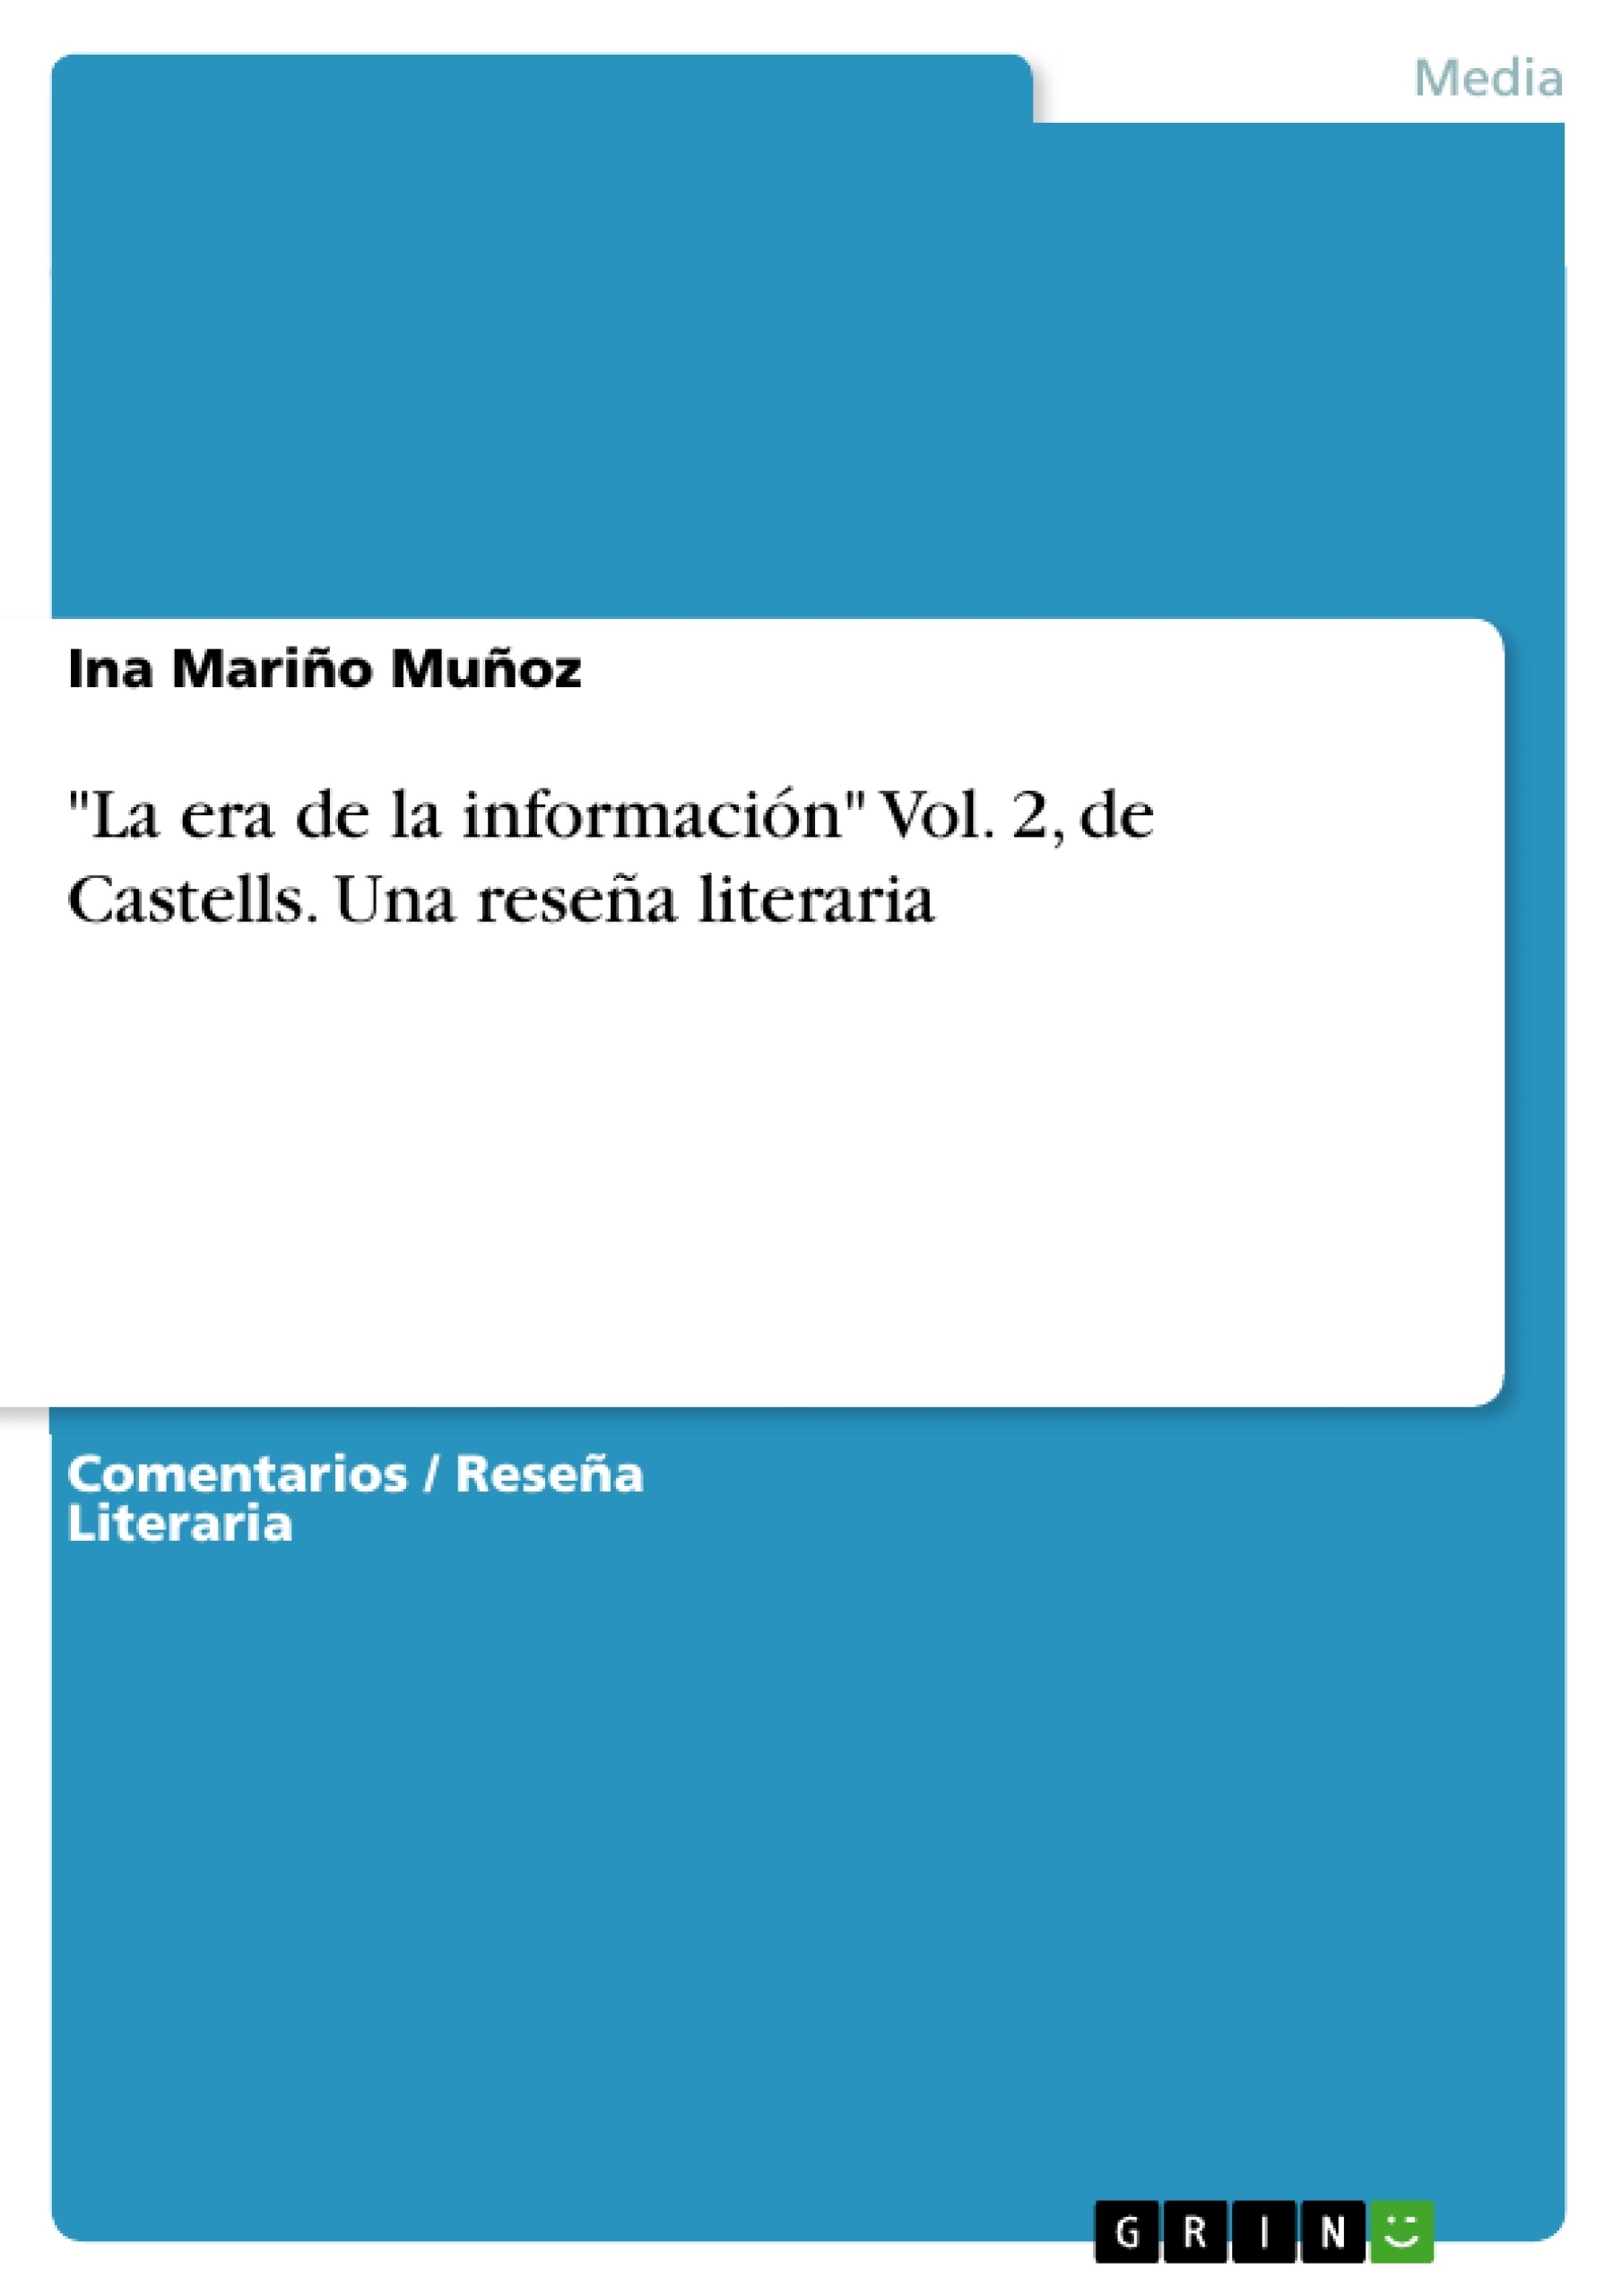 Titre: "La era de la información" Vol. 2, de Castells. Una reseña literaria